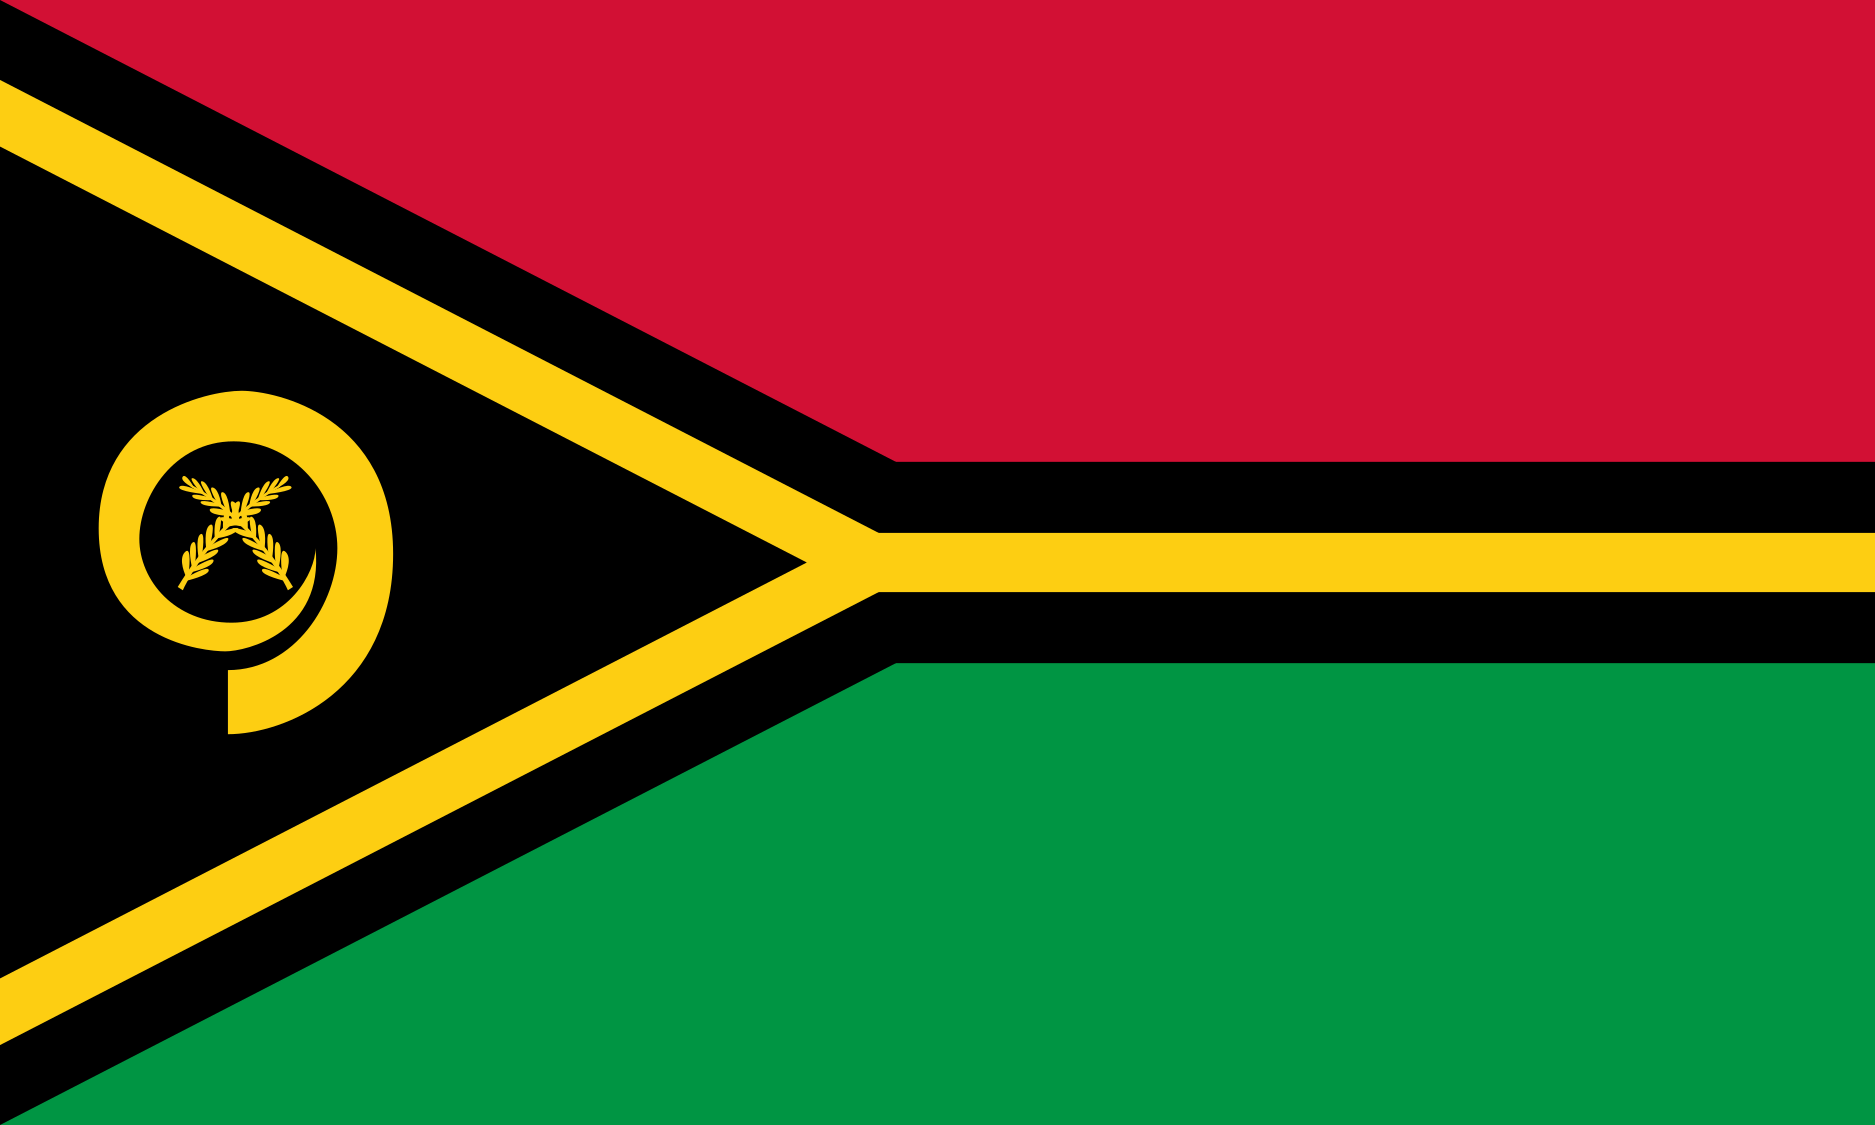 Vanuatu Flag Image - Free Download